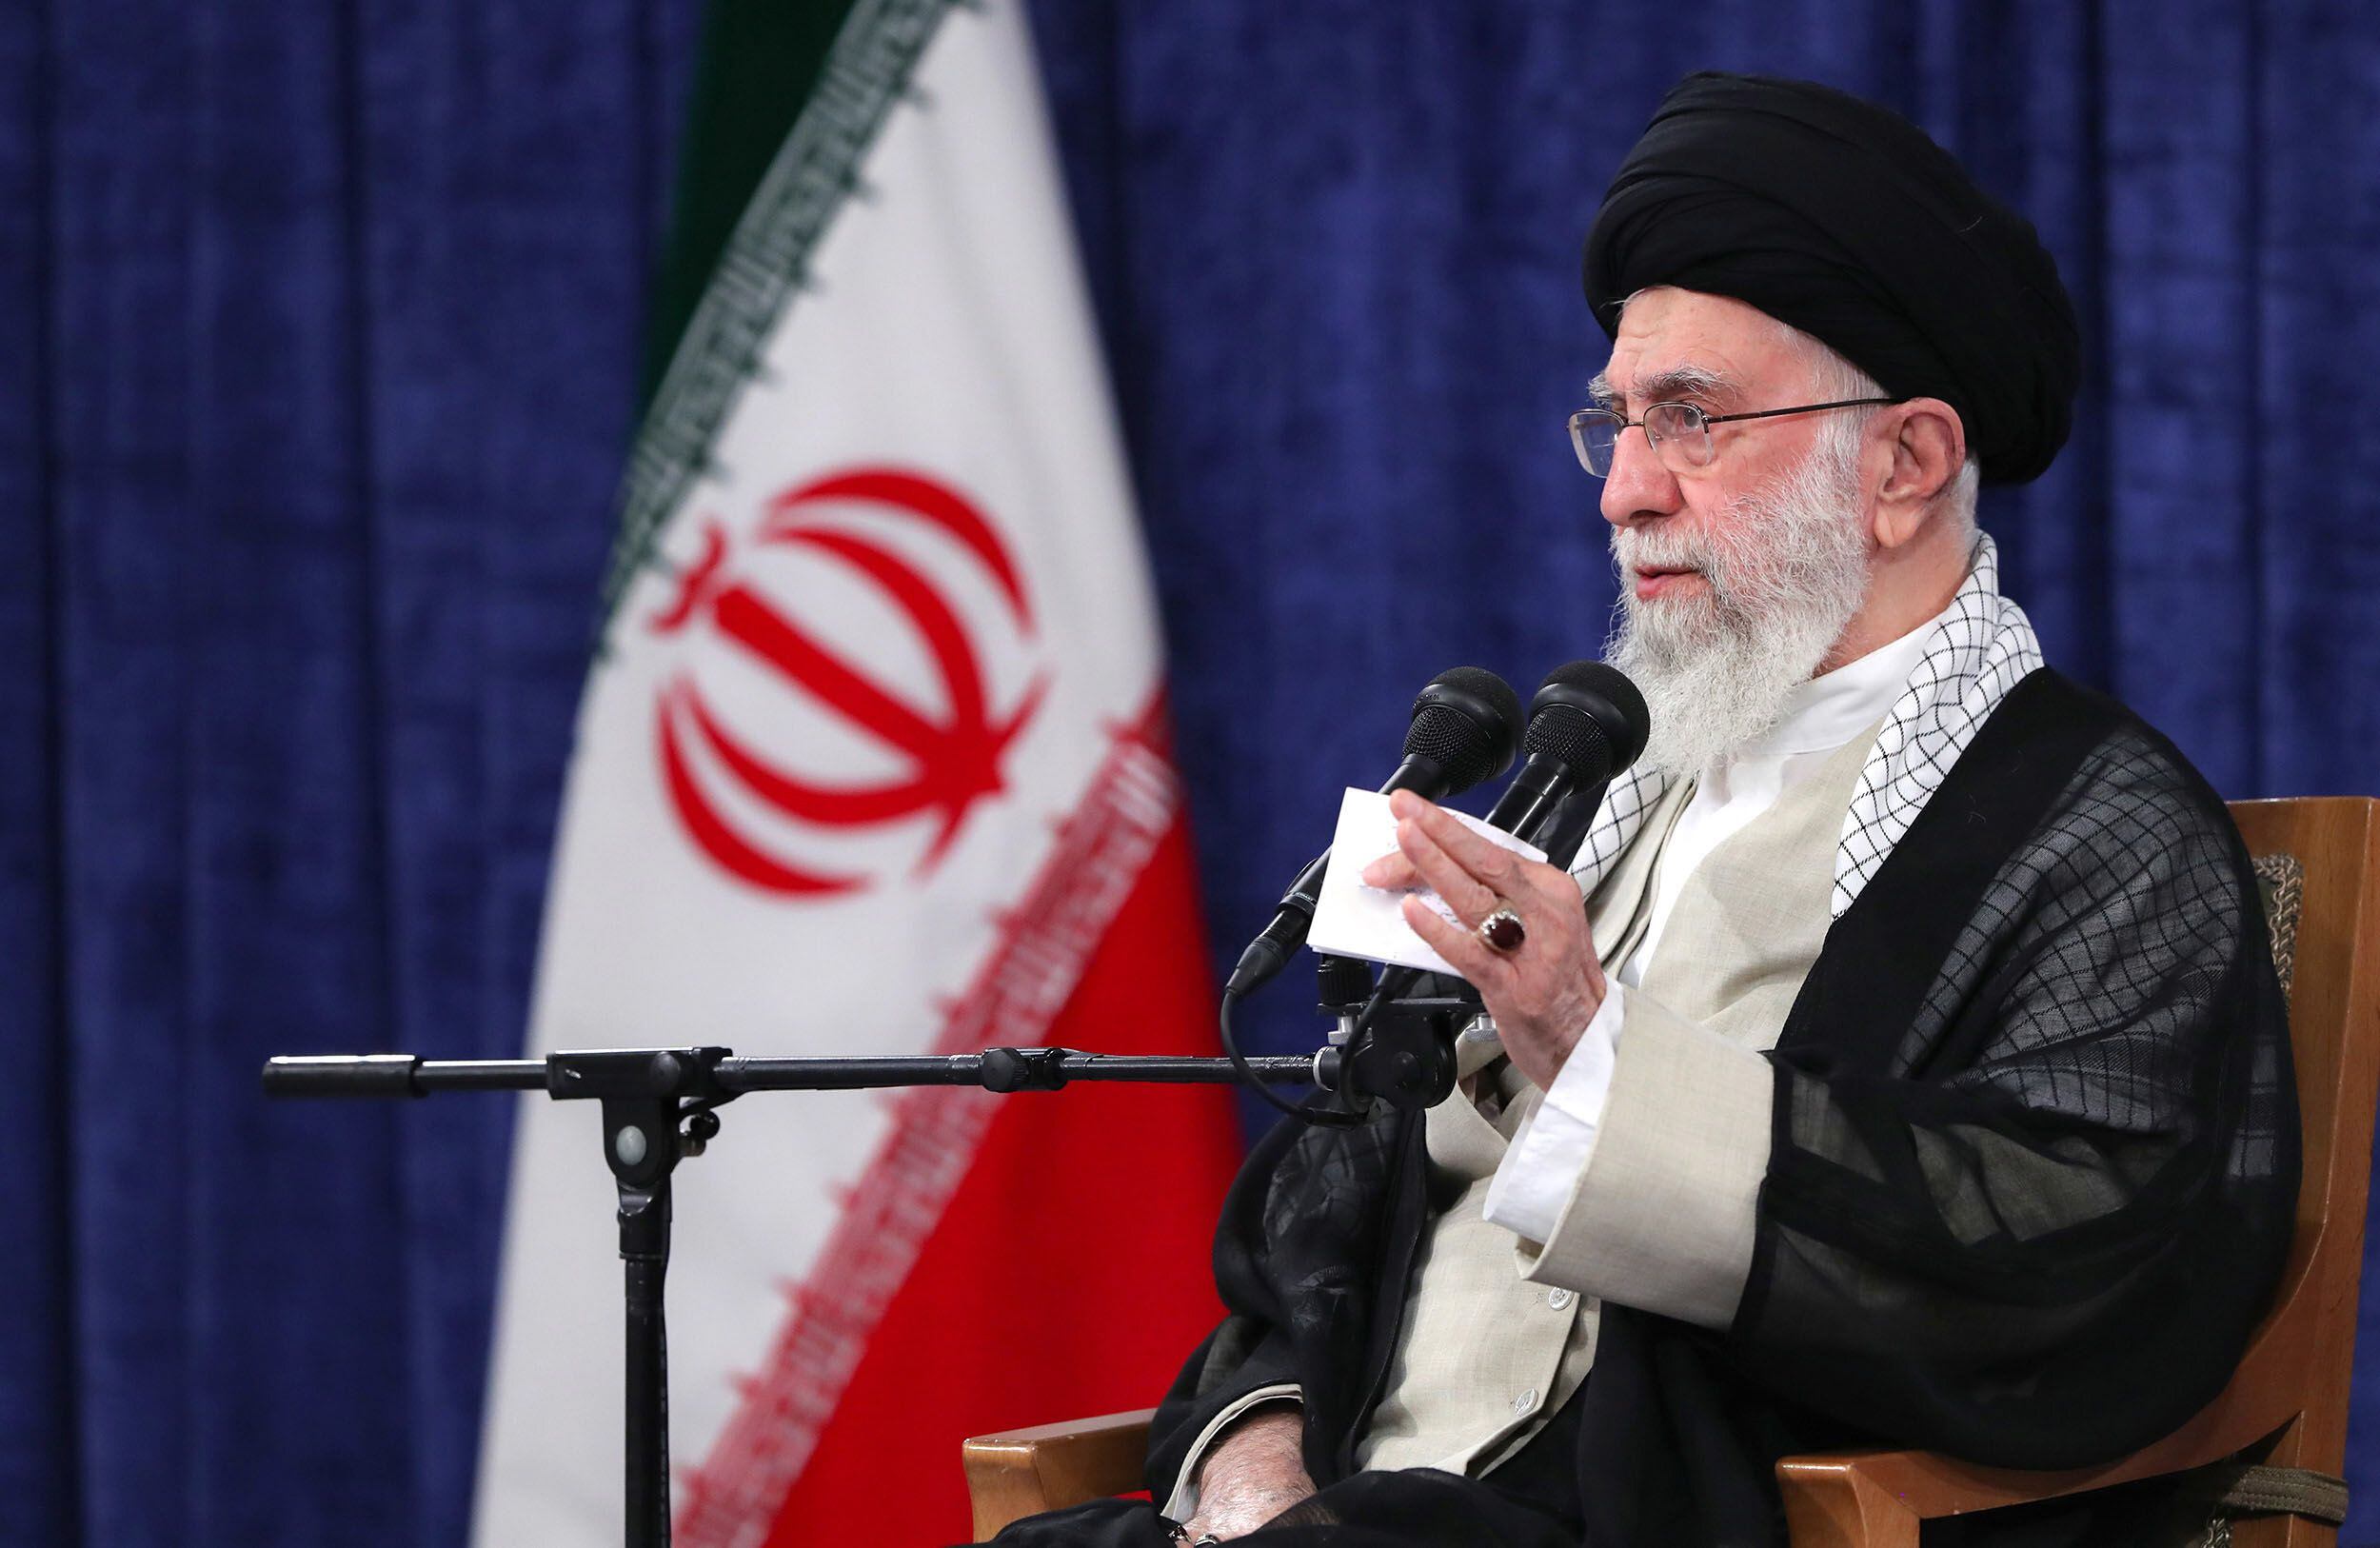 Una foto proporcionada por la oficina del líder supremo iraní muestra al líder supremo iraní, el ayatolá Ali Khamenei, hablando durante una reunión con miembros del Consejo de Discernimiento de Conveniencia iraní en Teherán, Irán.